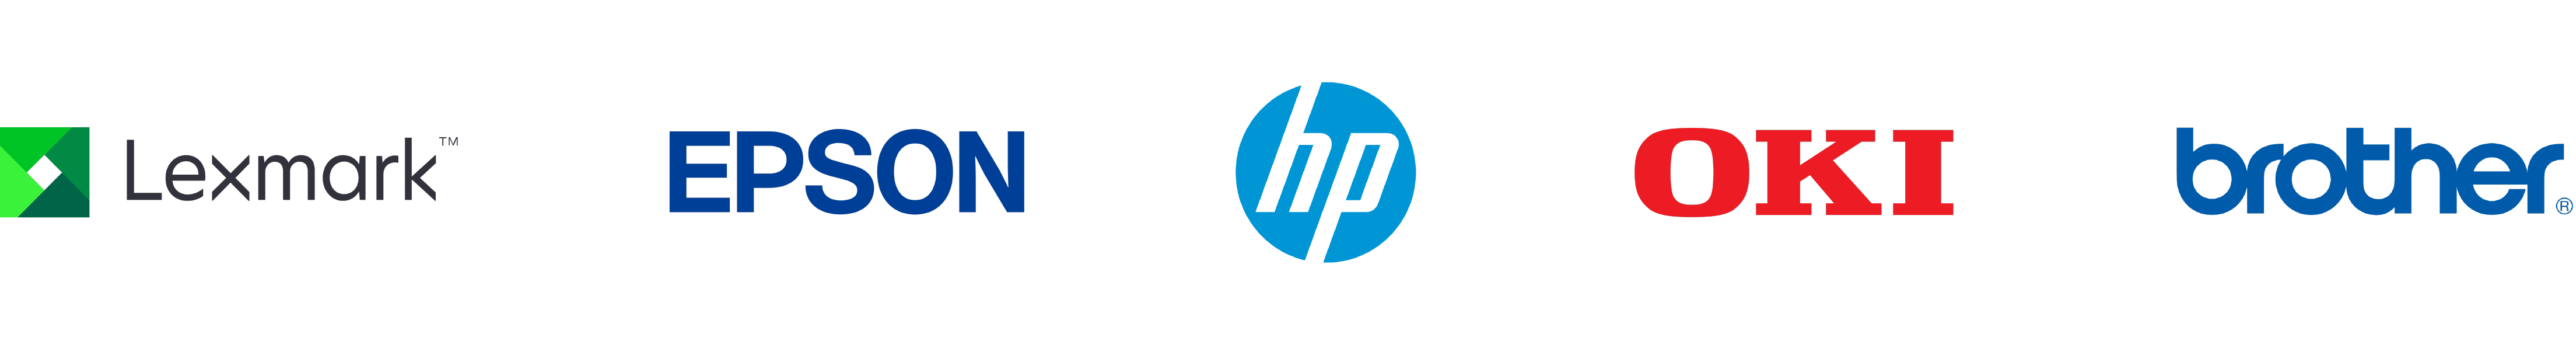 Logo εταιριών εκτυπωτών: Lexmark, Epson, HP, OKI, Brother